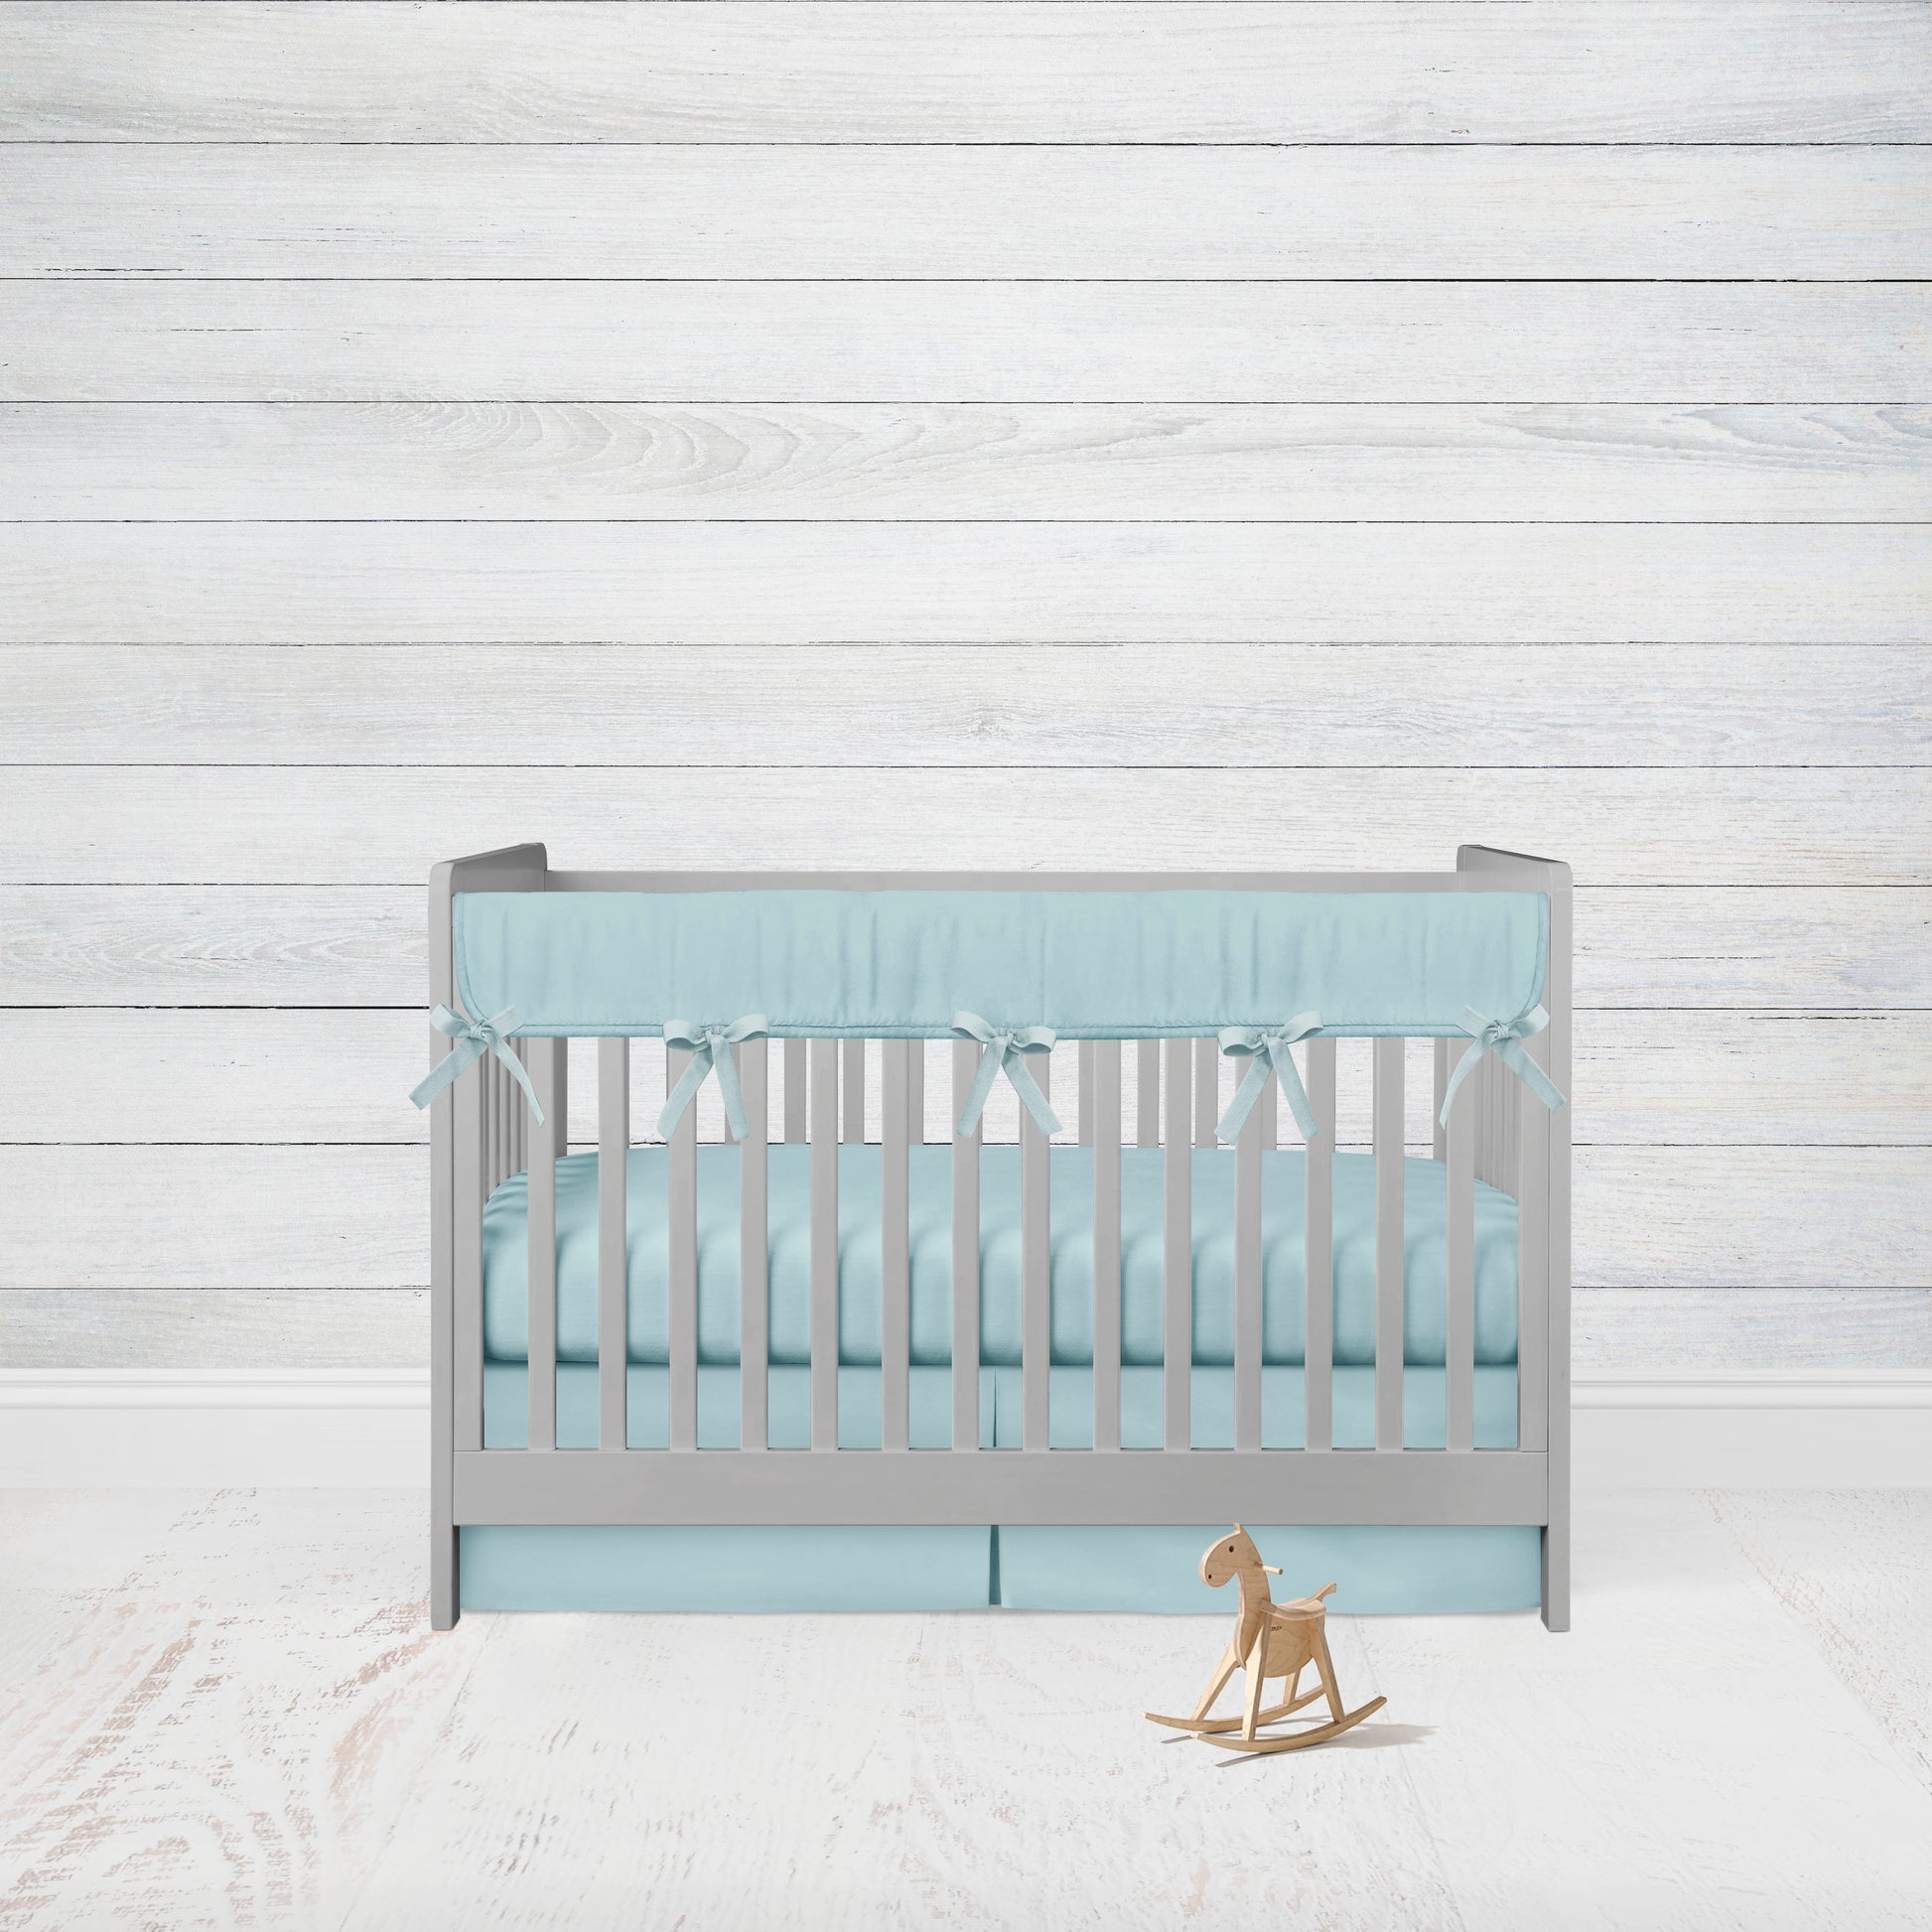 aqua crib rail cover with aqua ties, aqua crib sheet & aqua pleat crib skirt shown on a crib in a nursery